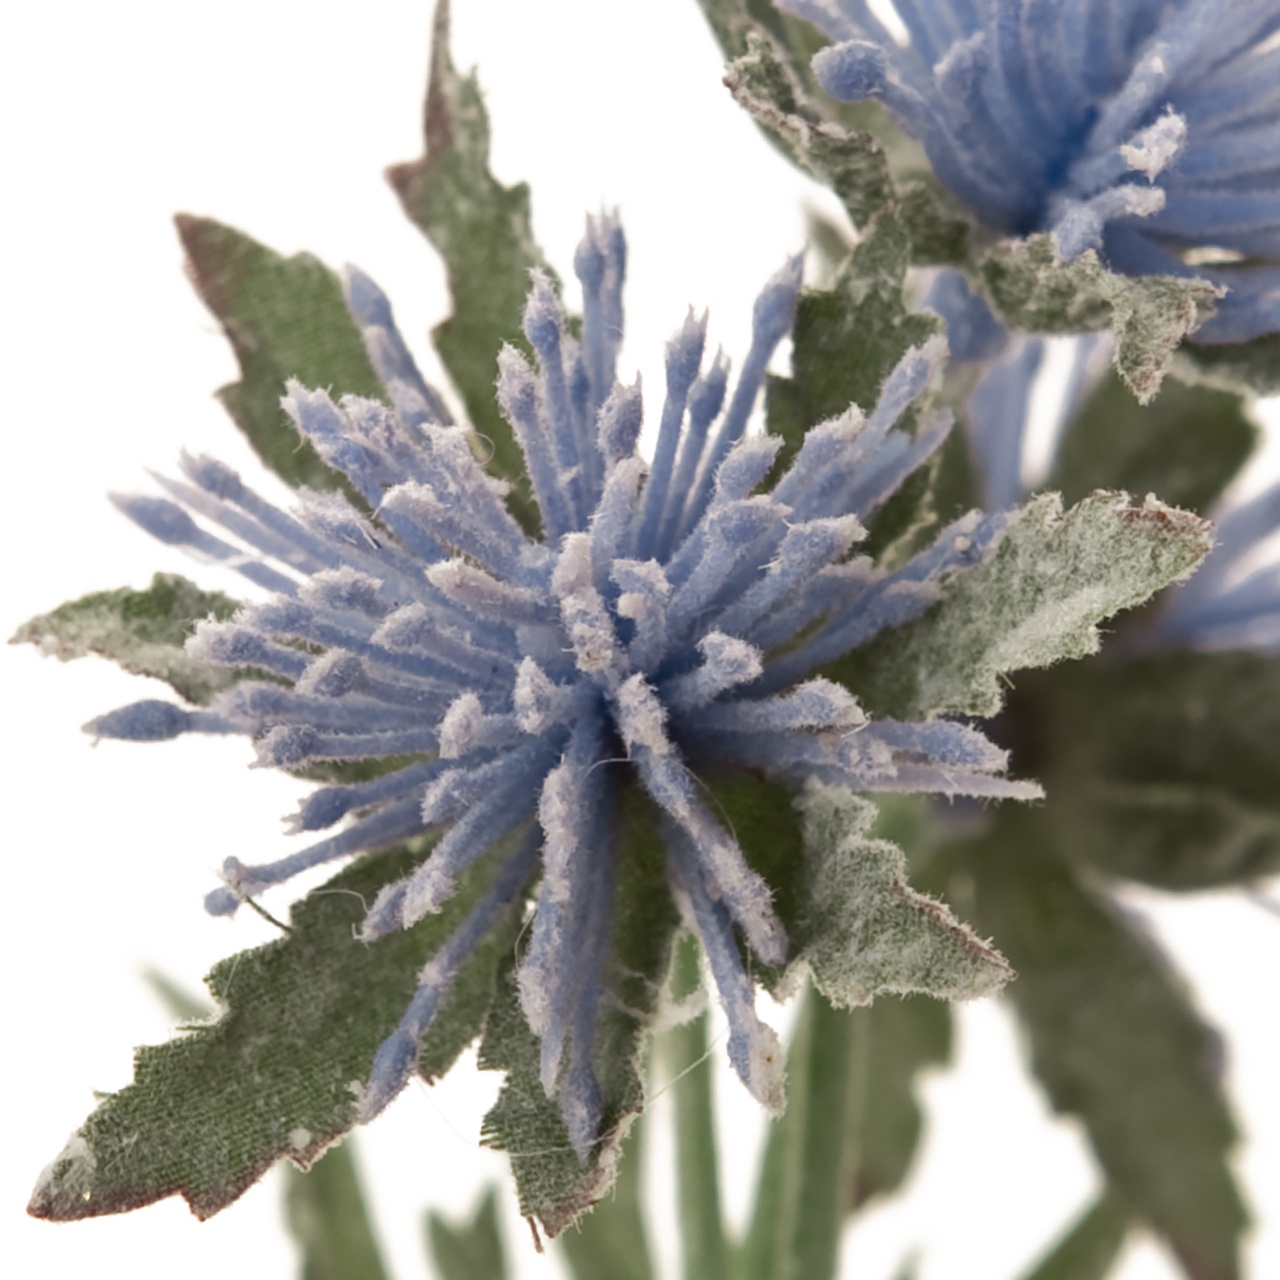 マイフラ 通販 Magiq マナエリンジウム バンドル ブルー アーティフィシャルフラワー 造花 Fm 1束 エリンジウム 花径 約4 全長 約30cm ブルー Magiq アーティフィシャルフラワー 造花 全国にmagiq 花器 花資材などをお届けします